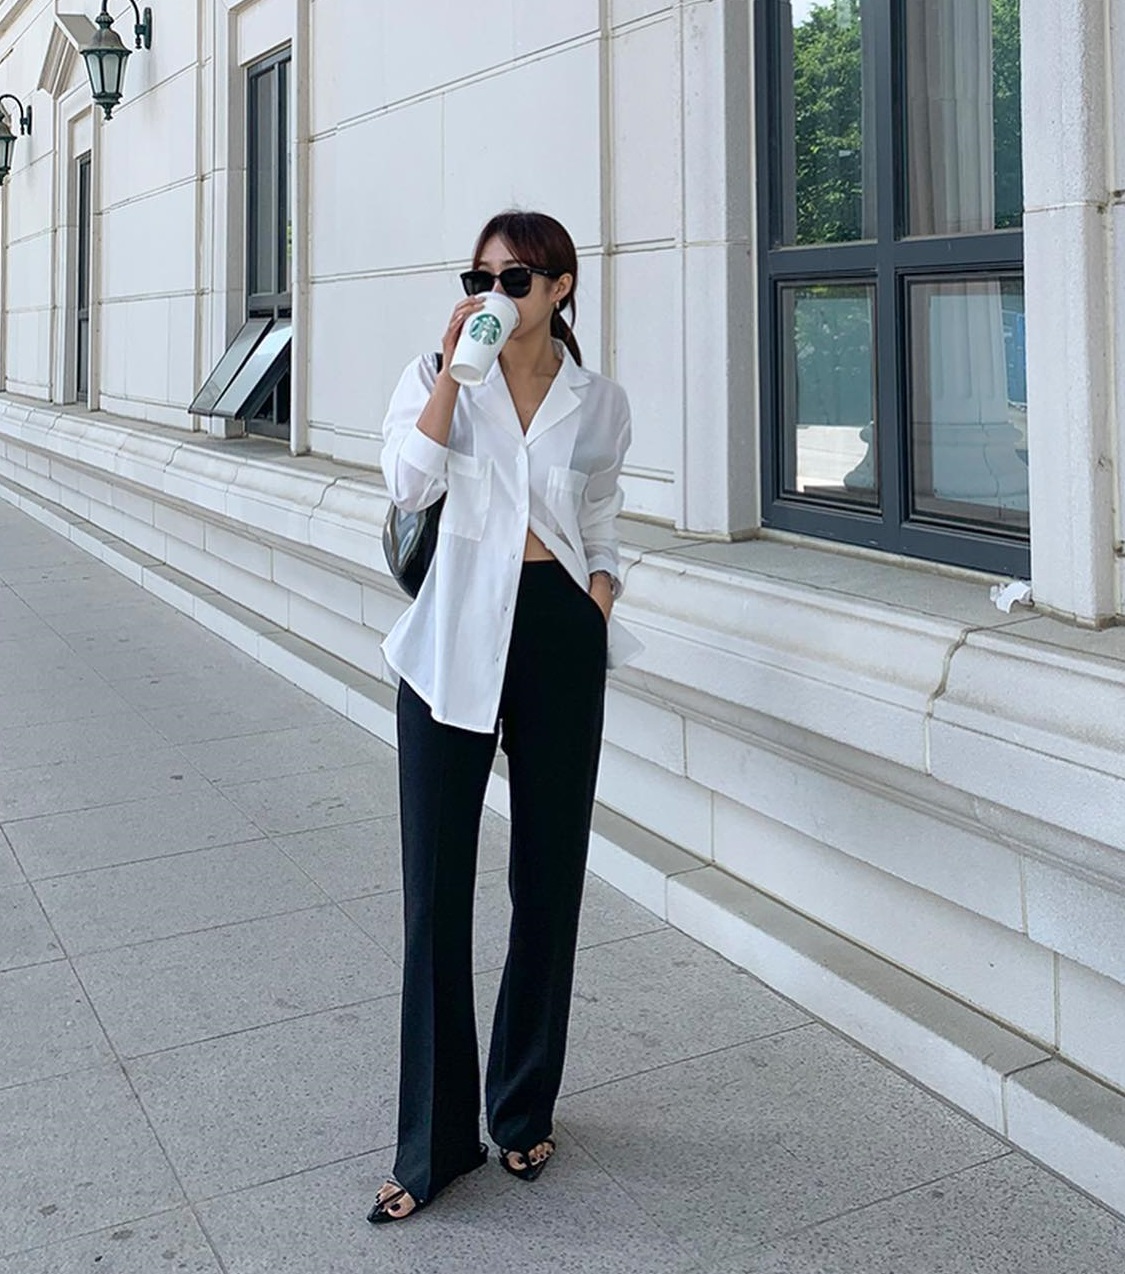 10 cách phối áo trắng với quần đen giúp bạn mặc đẹp trong tích tắc - Ảnh 2.